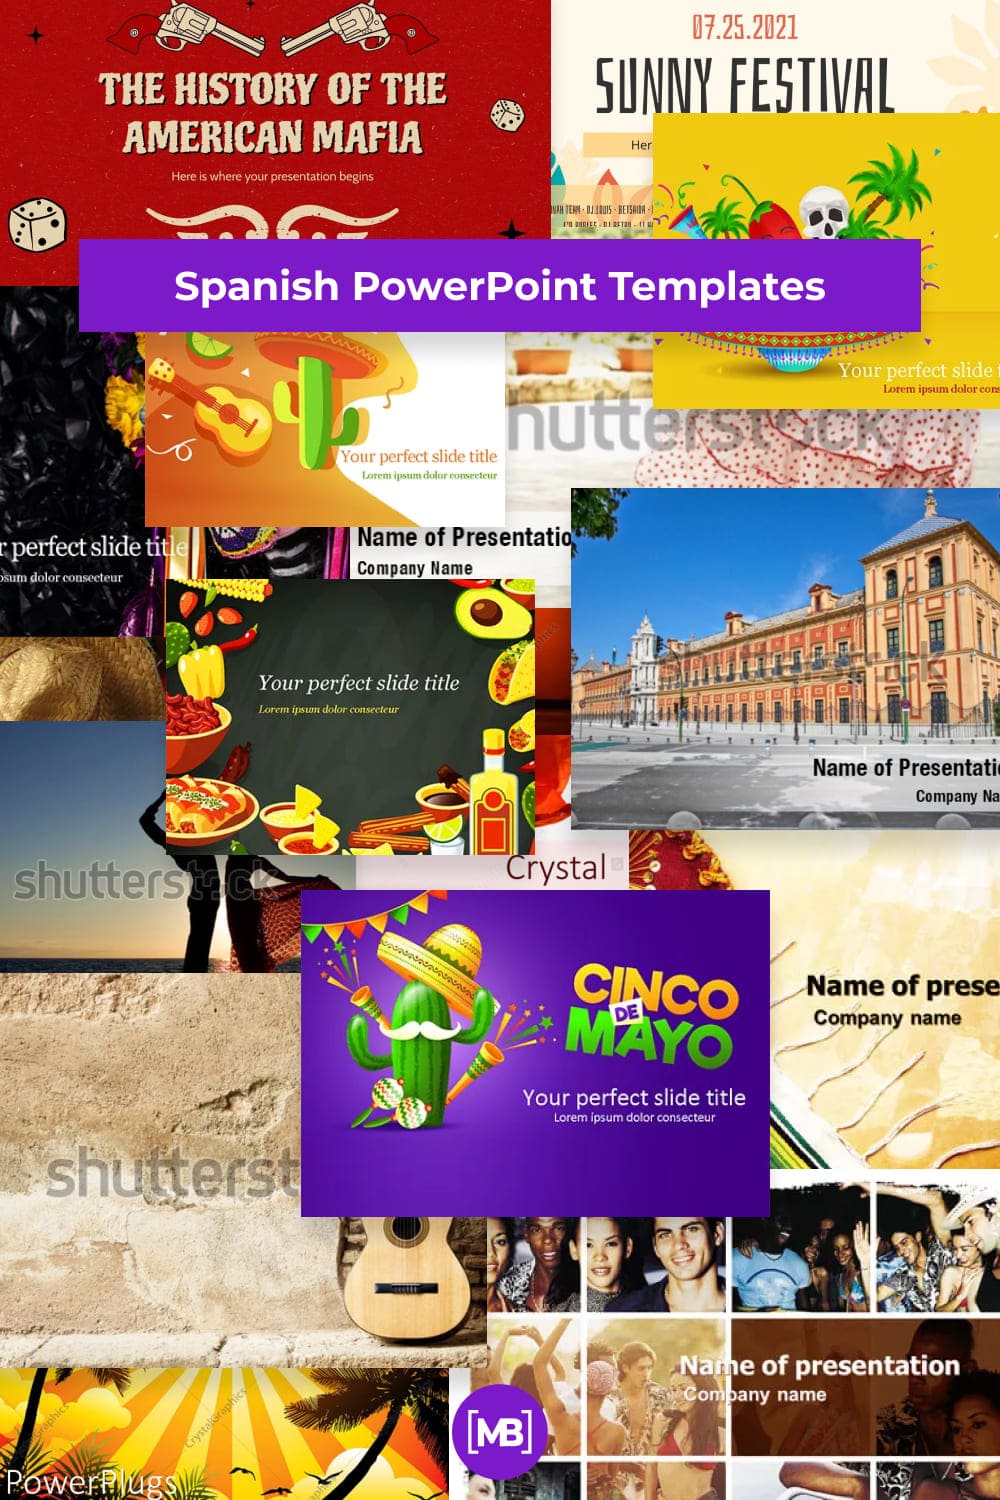 Spanish PowerPoint Templates Pinterest.